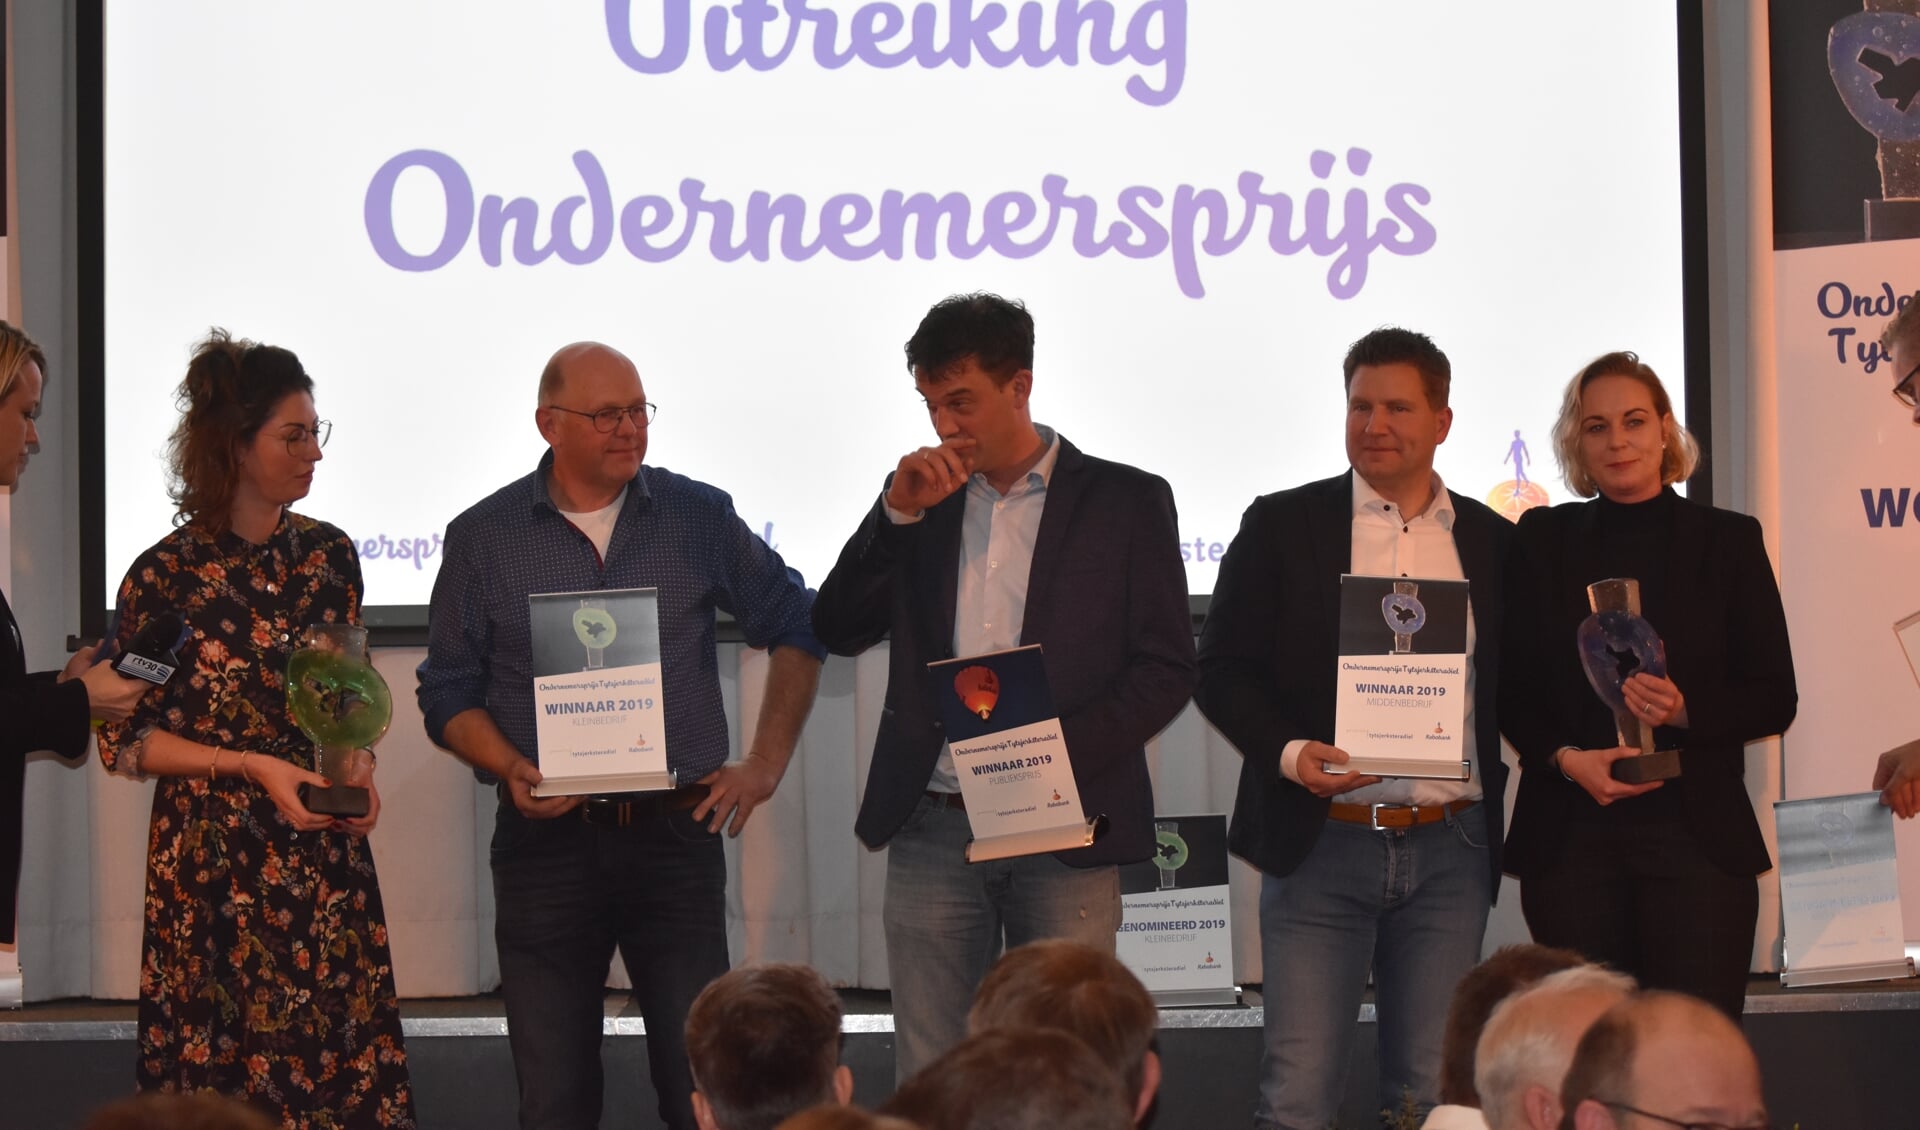 De winnaars: de Pietersma's (links) van Om de Dobben, Johan Timmermans (Timmermantsjoender) in het midden en Bouwbedrijf Swart (rechts).